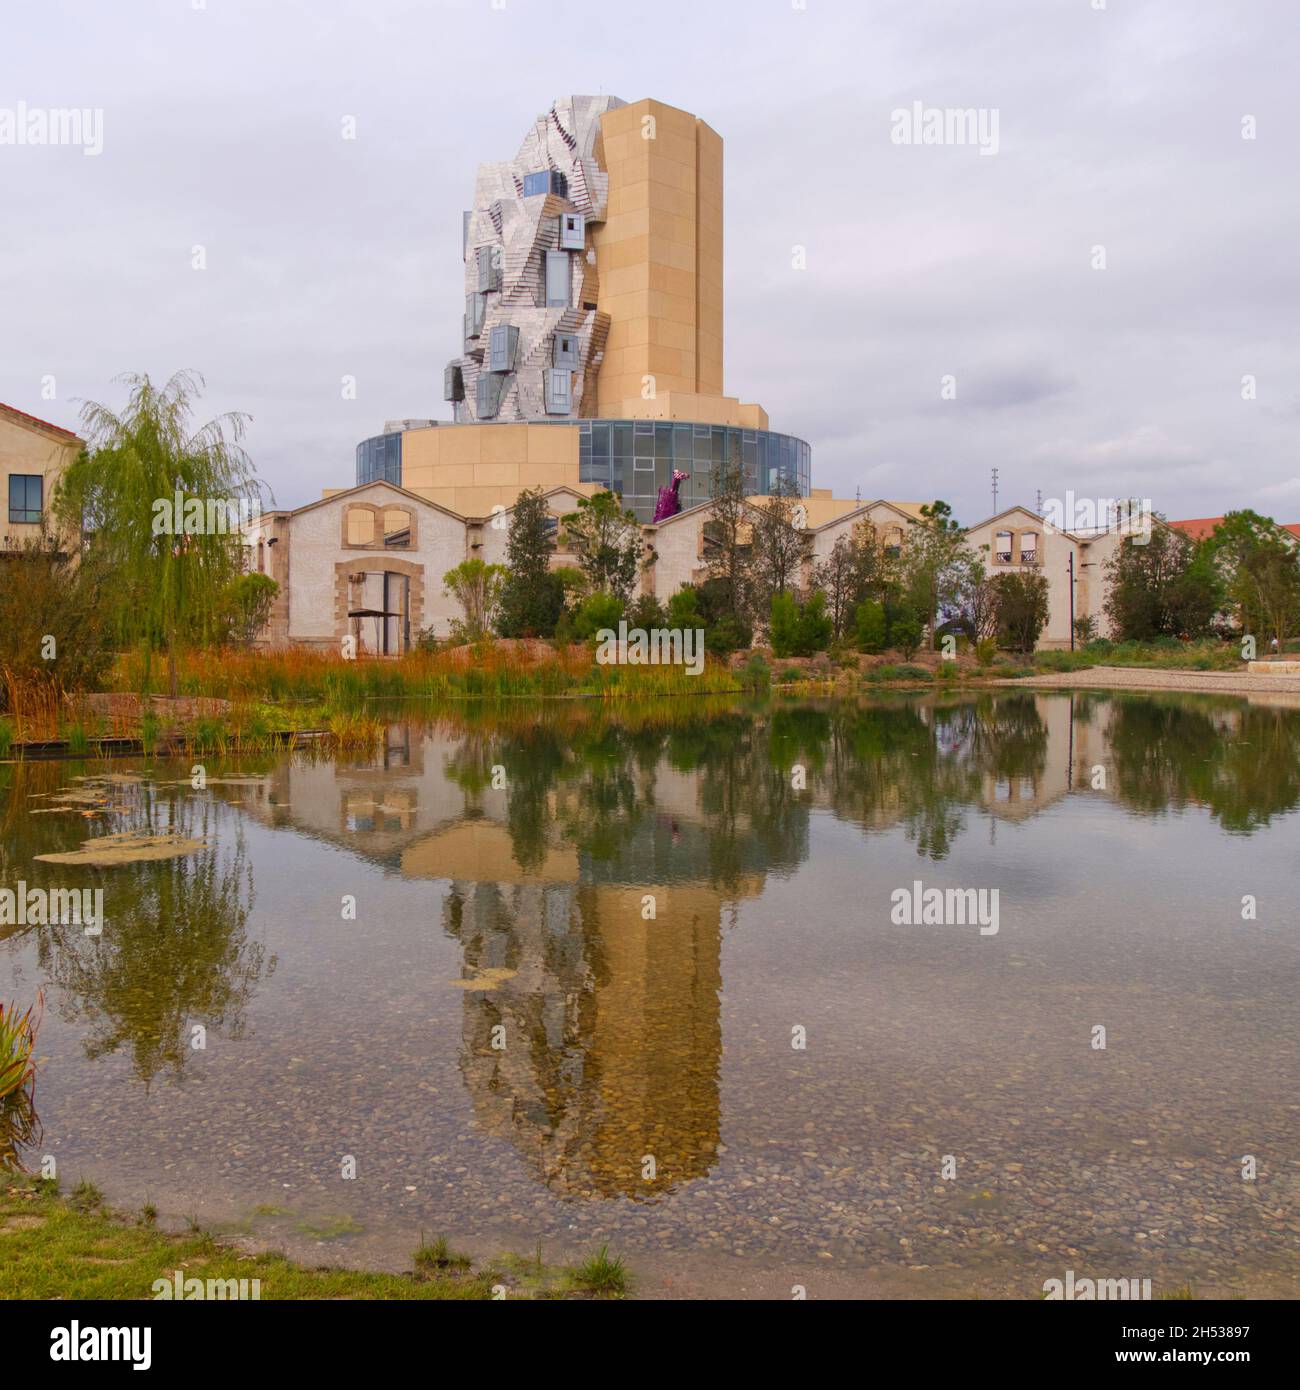 Tour Luma de Frank Gehry, Parc des ateliers, Arles, France Banque D'Images